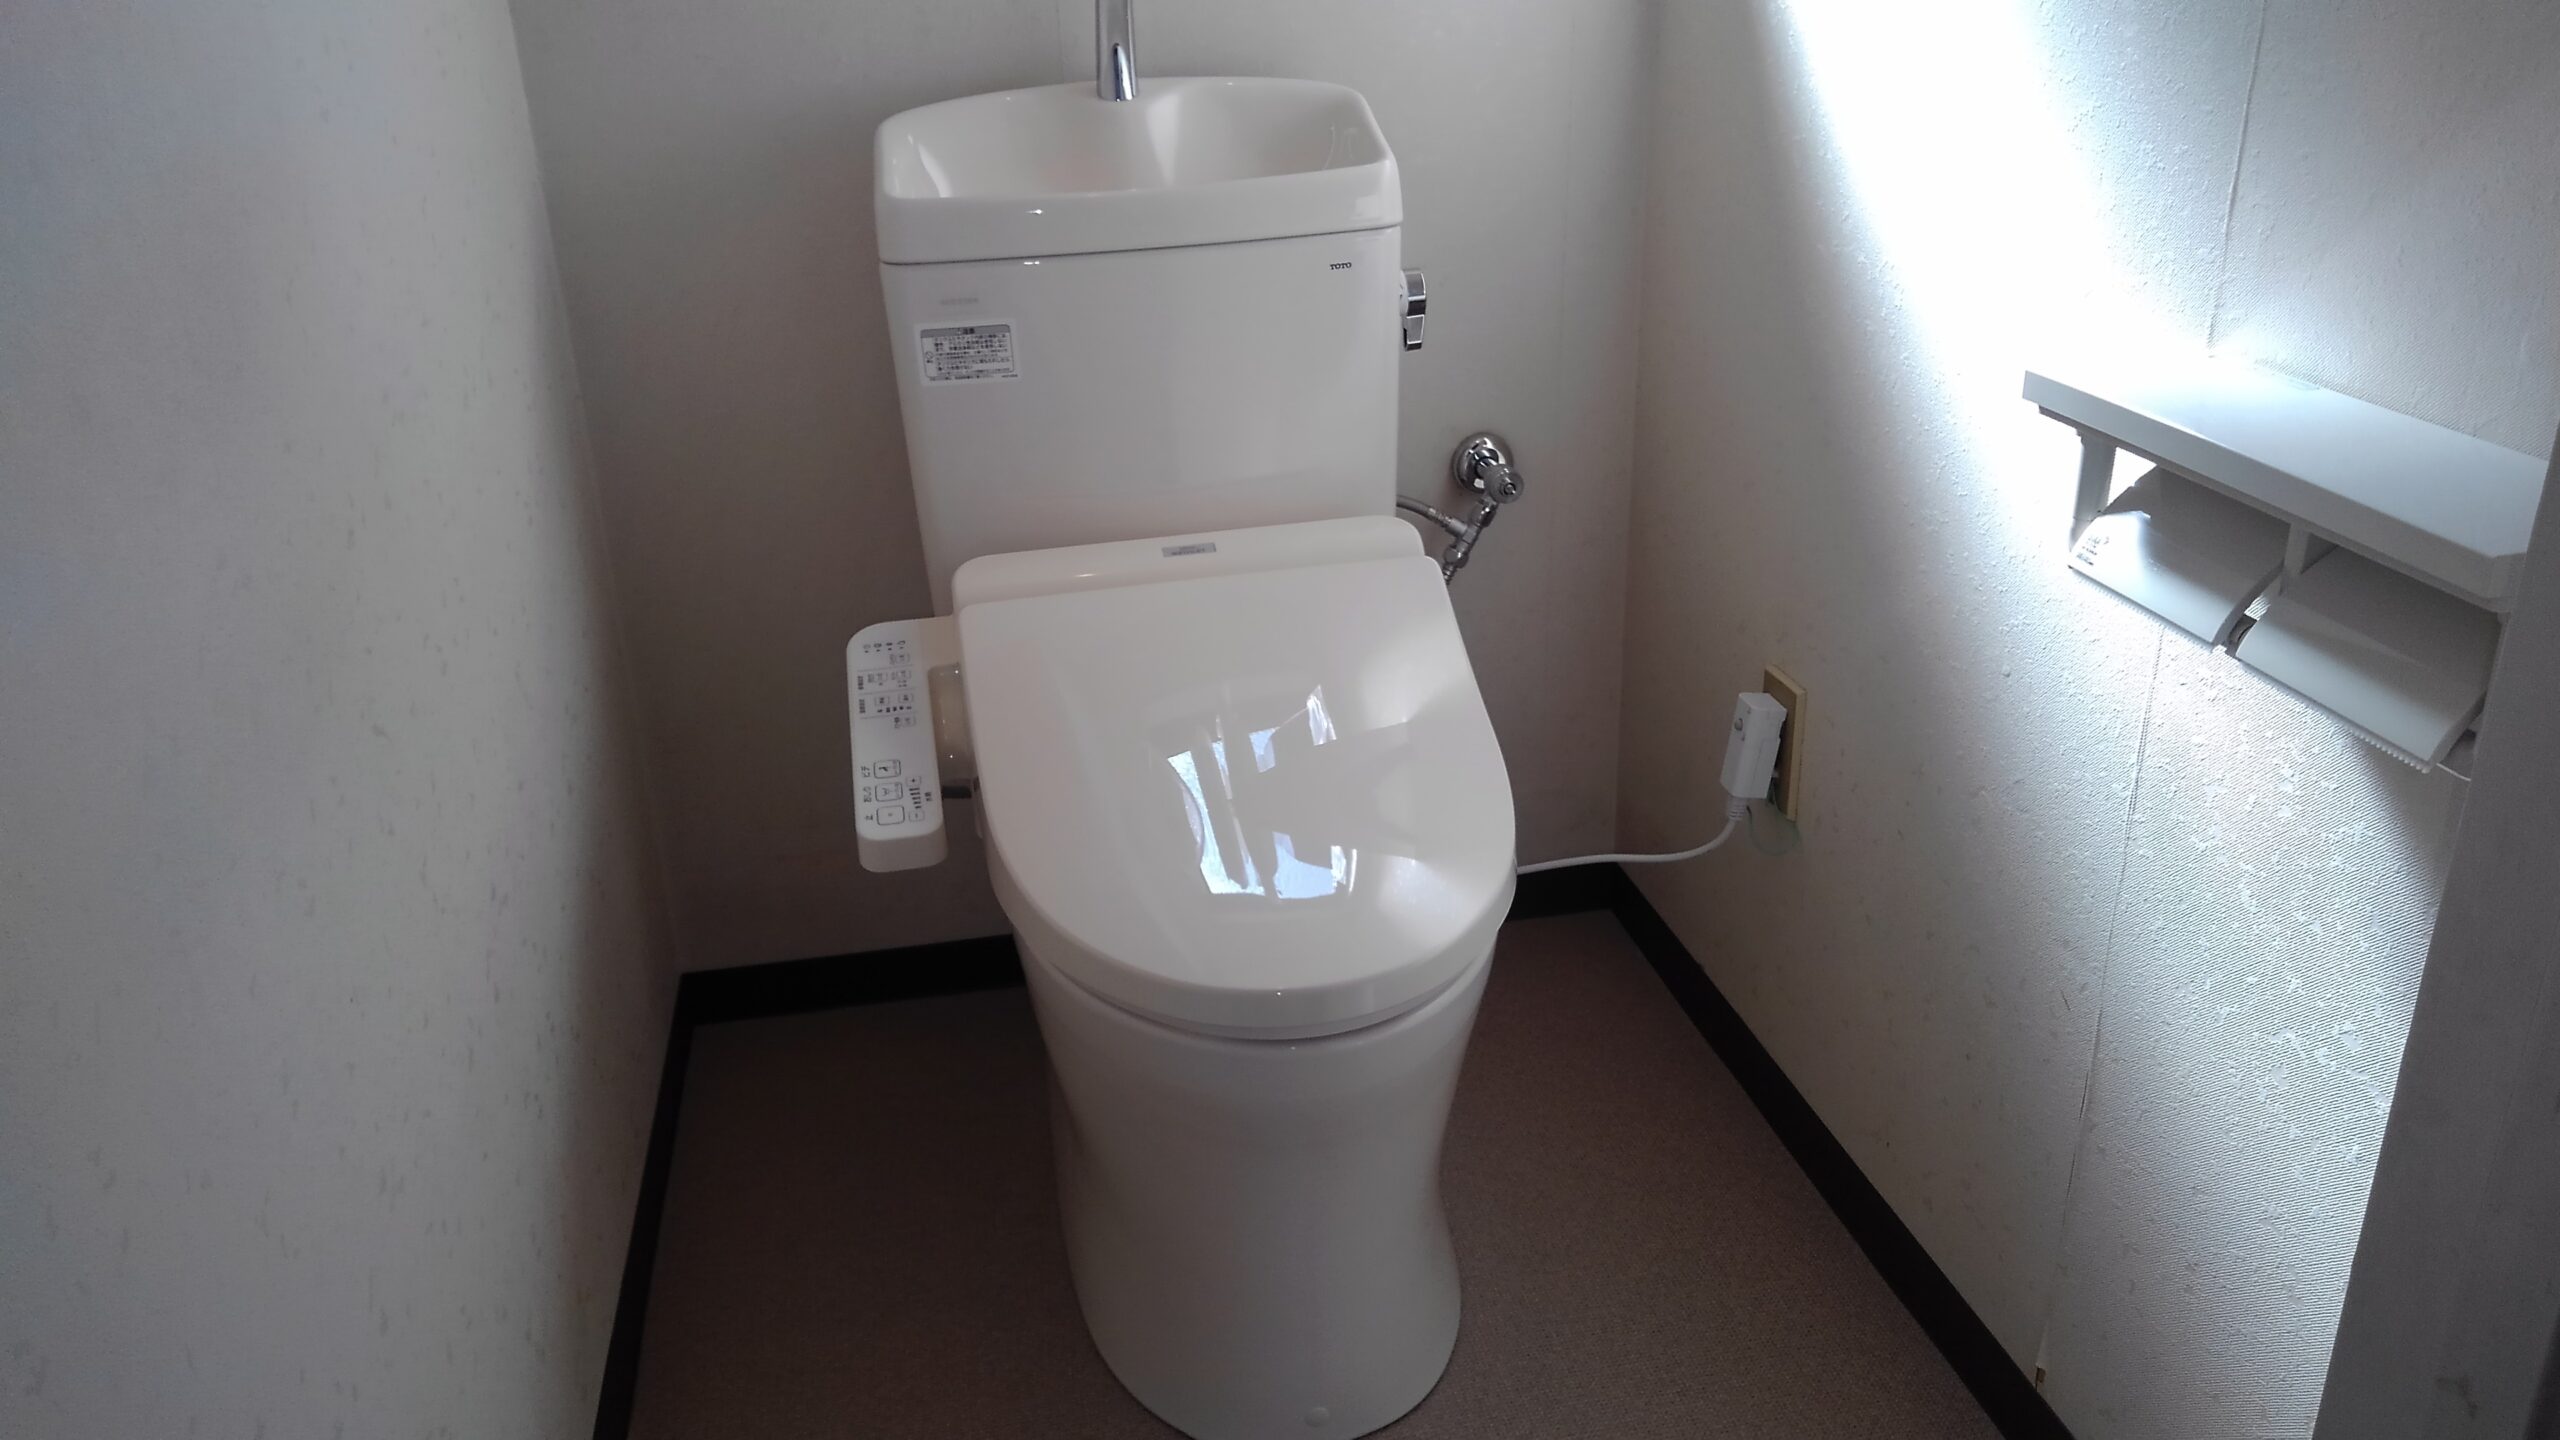 大阪市平野区　戸建て住宅の洋式トイレ取替リフォーム工事　内装工事とセット